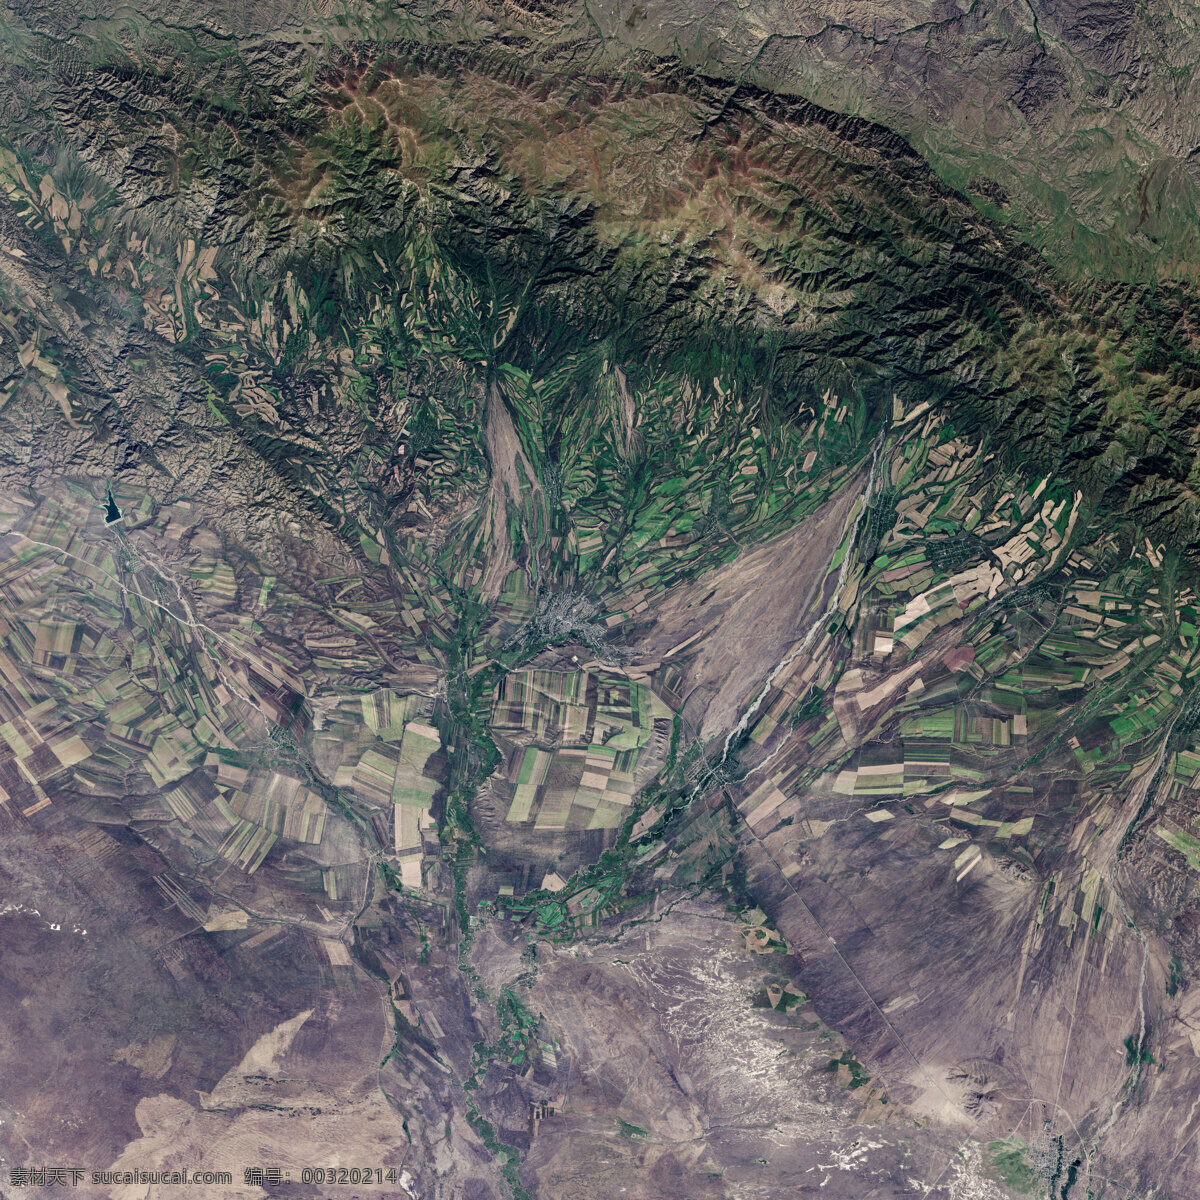 哈萨克斯坦 秋收 nasa 美国太空总署 地图 地理 卫星照片 卫星拍摄 卫星地图 遥感 卫星影像 三维地图 卫星云图 谷歌地图 自然景观